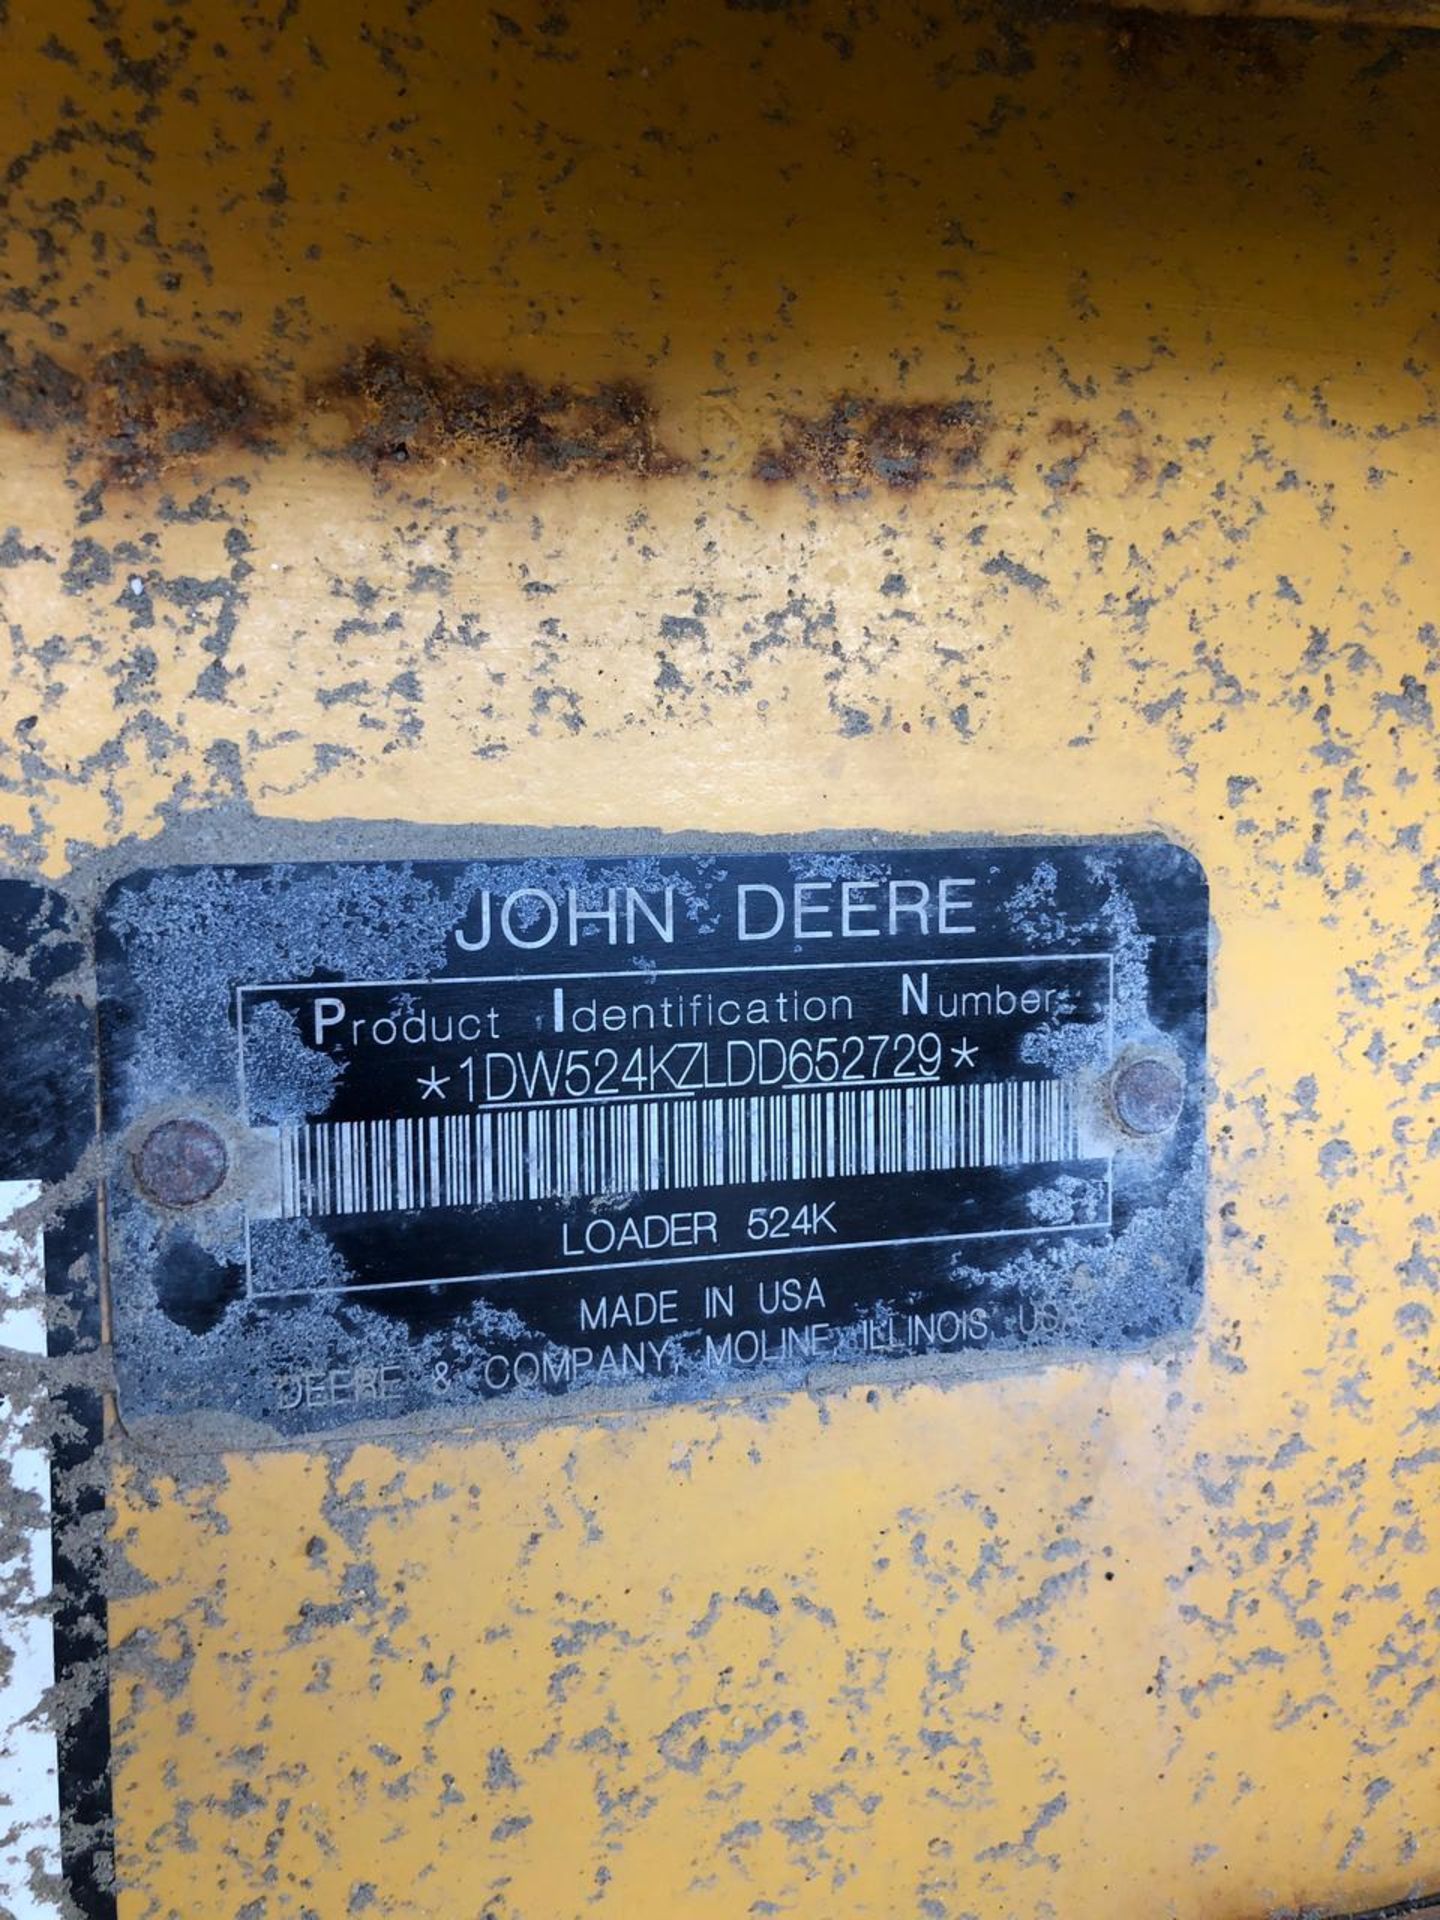 2015 John Deere 524K Loader - Image 5 of 7